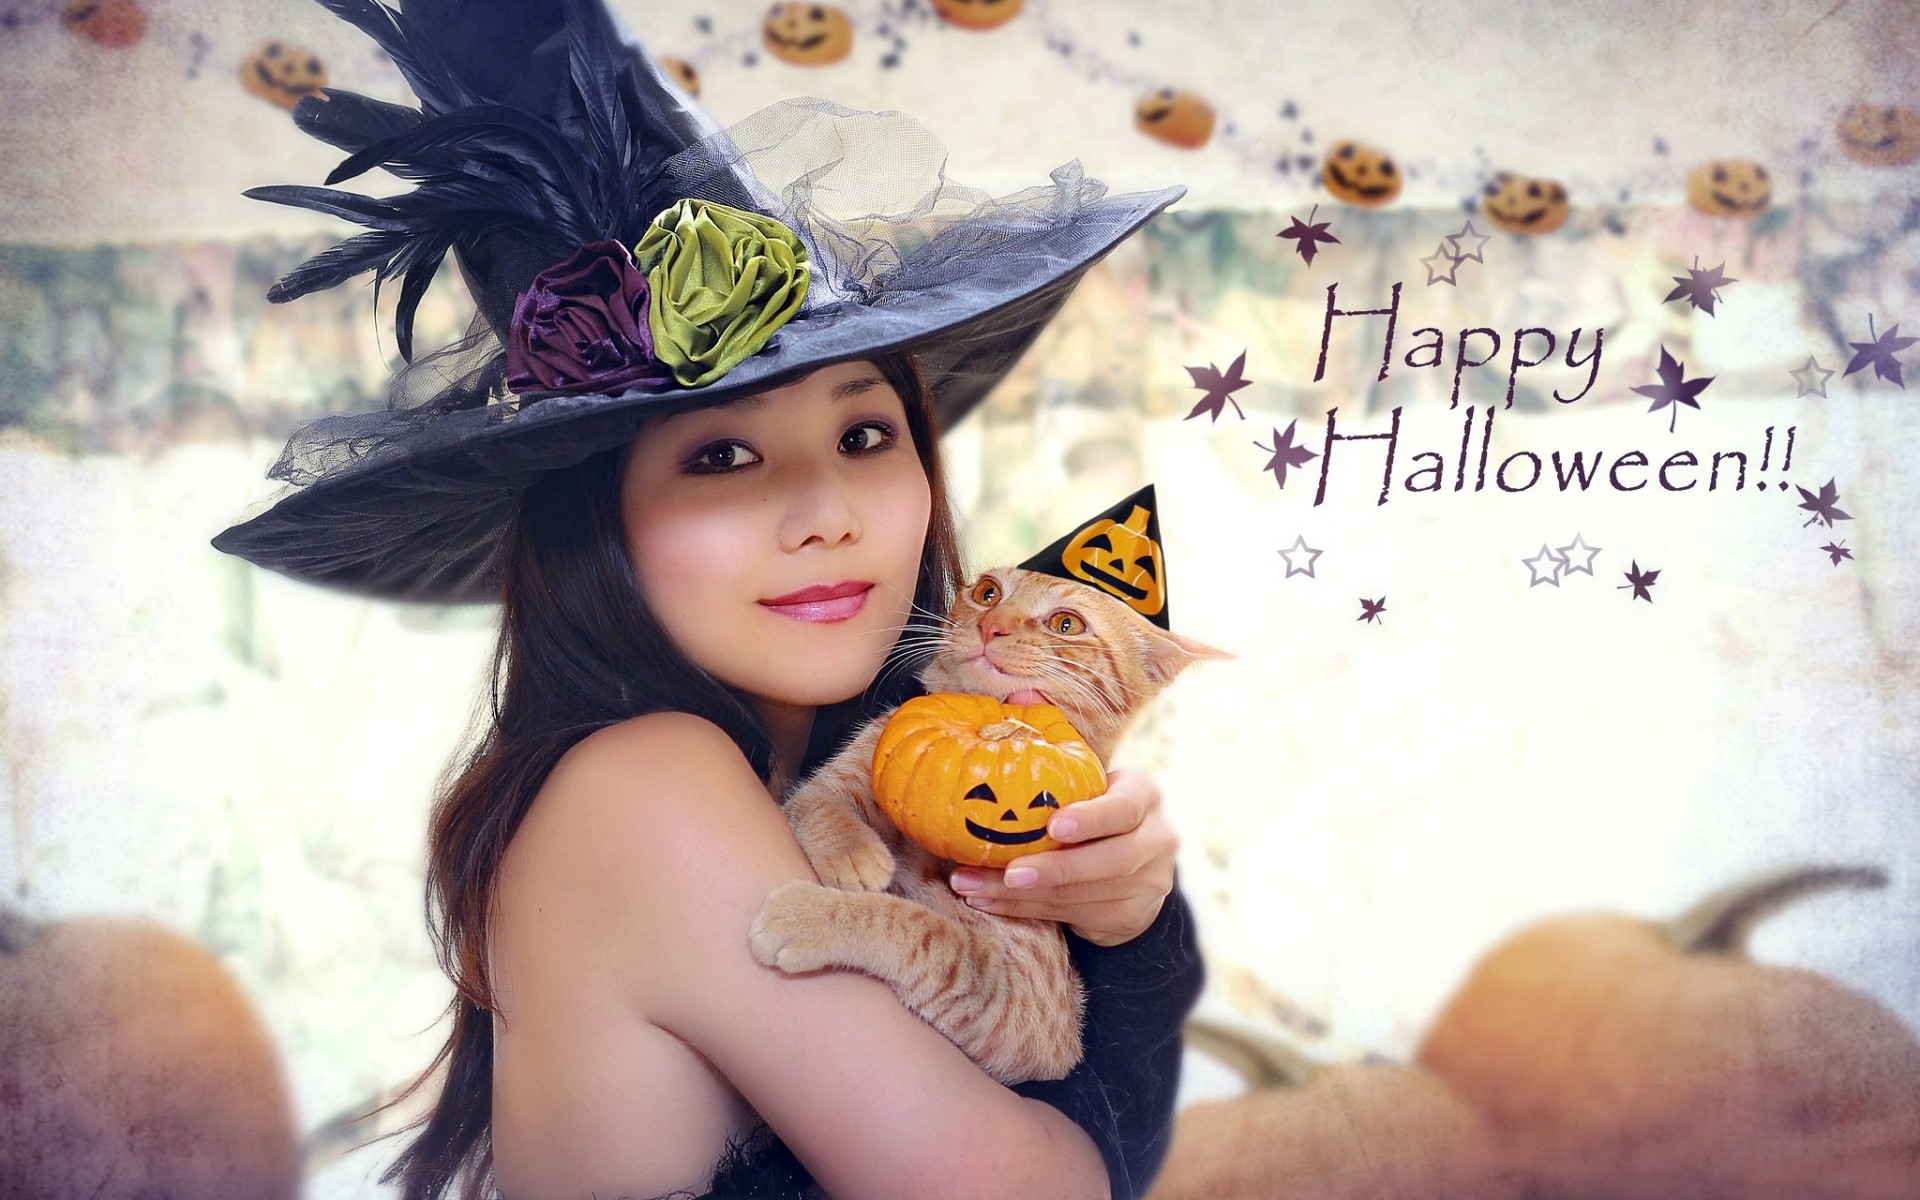 Happy Halloween Girl Wallpapers - 1920x1200 - 411000